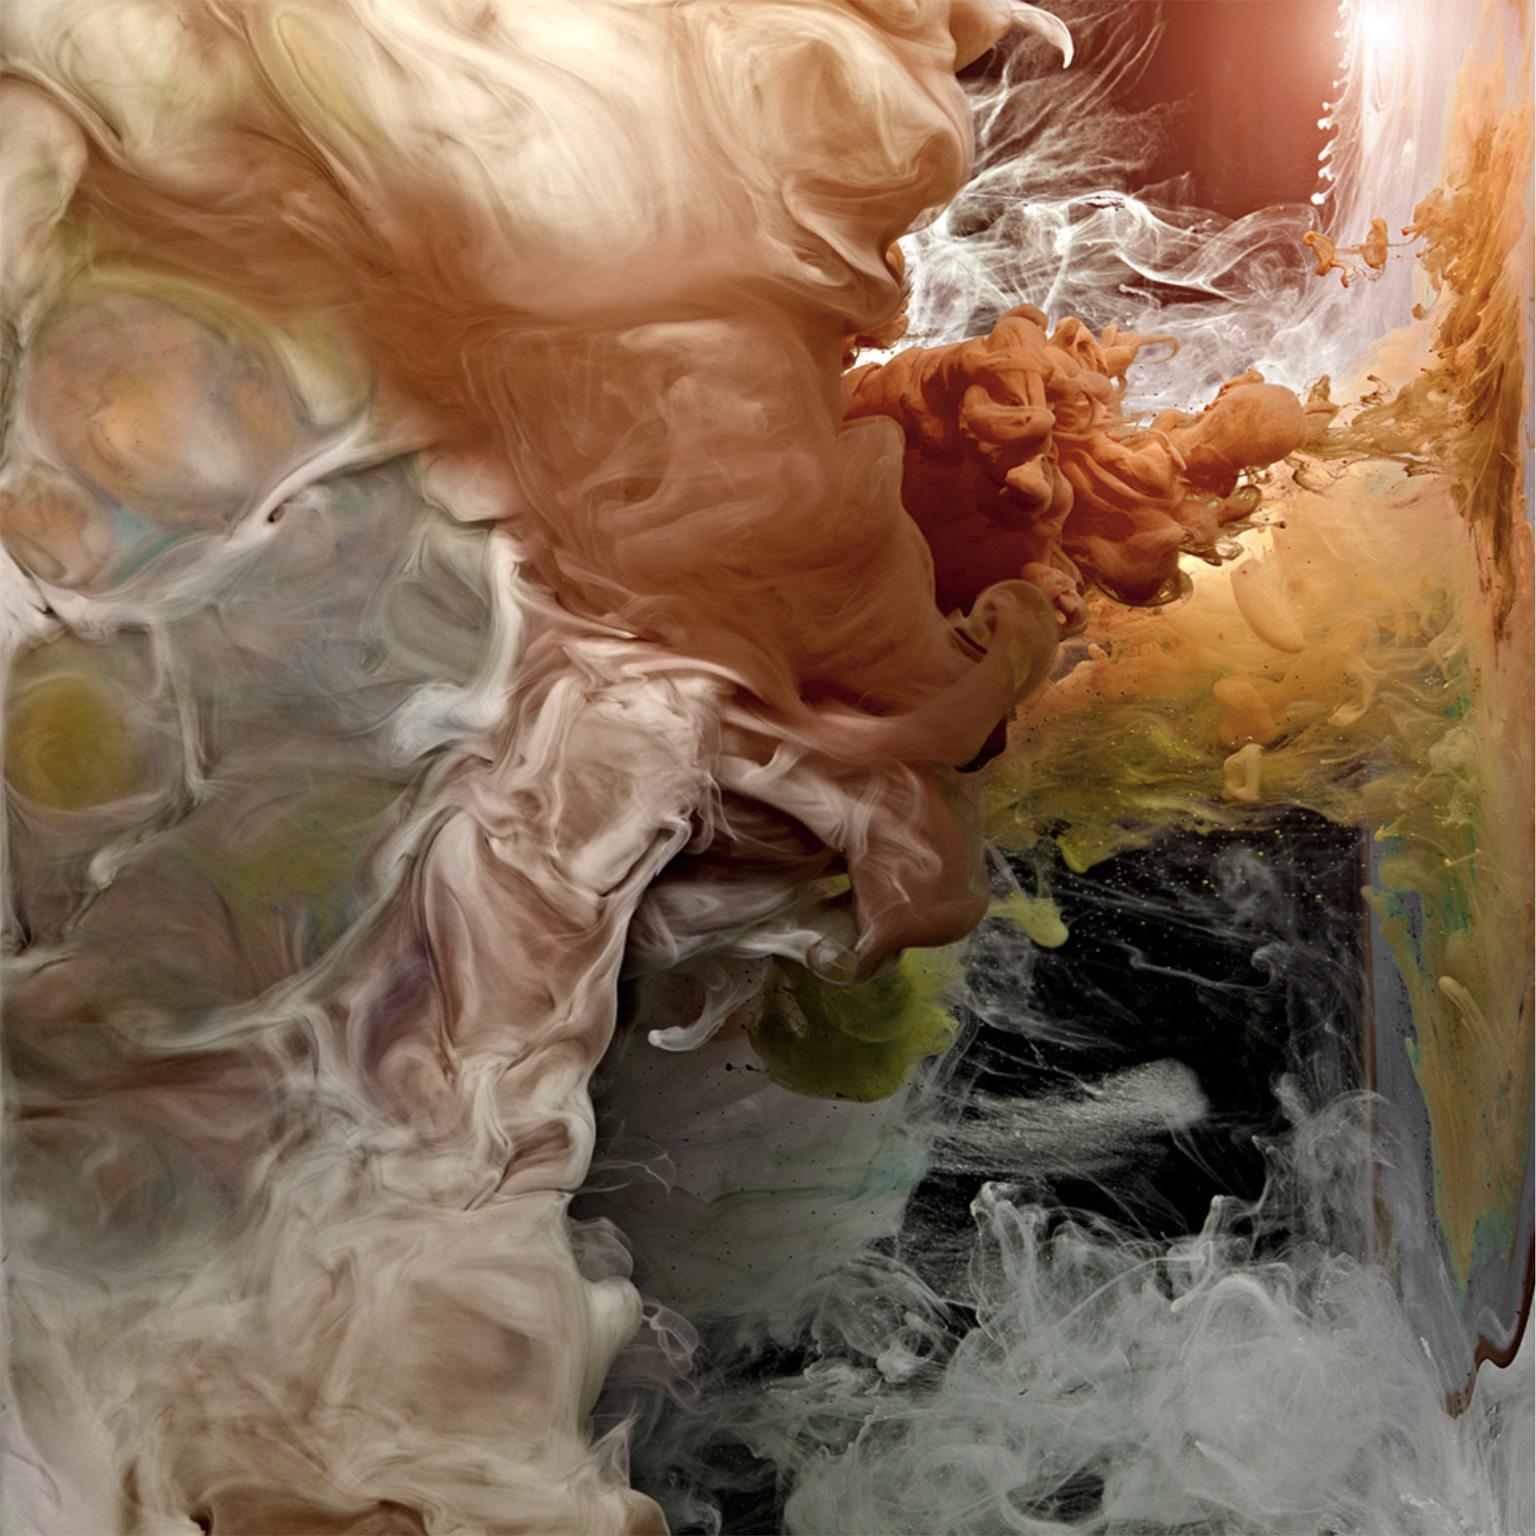 großformatige gerahmte Fotografie von faszinierenden Farbkompositionen flüssiger Wolkenlandschaftsmalerei im Wasser, hypnotisierende abstrakte Flüssigkeitslandschaften aus der Werkgruppe 'Hemisphere'

Hemisphäre I von Christian Stoll

58 x 58 Zoll